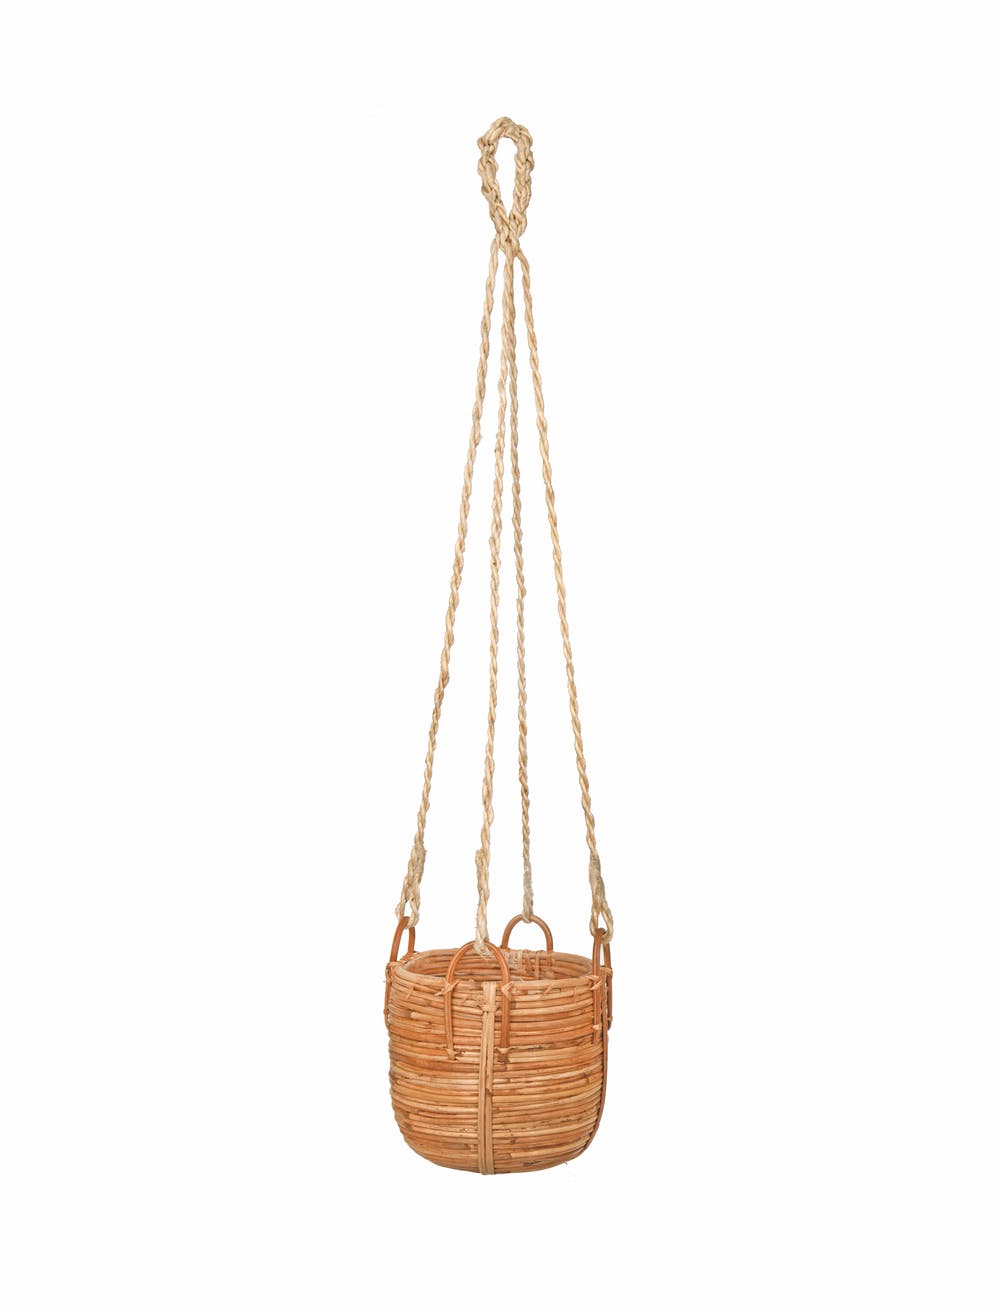 Garden Trading Rattan Hanging Basket